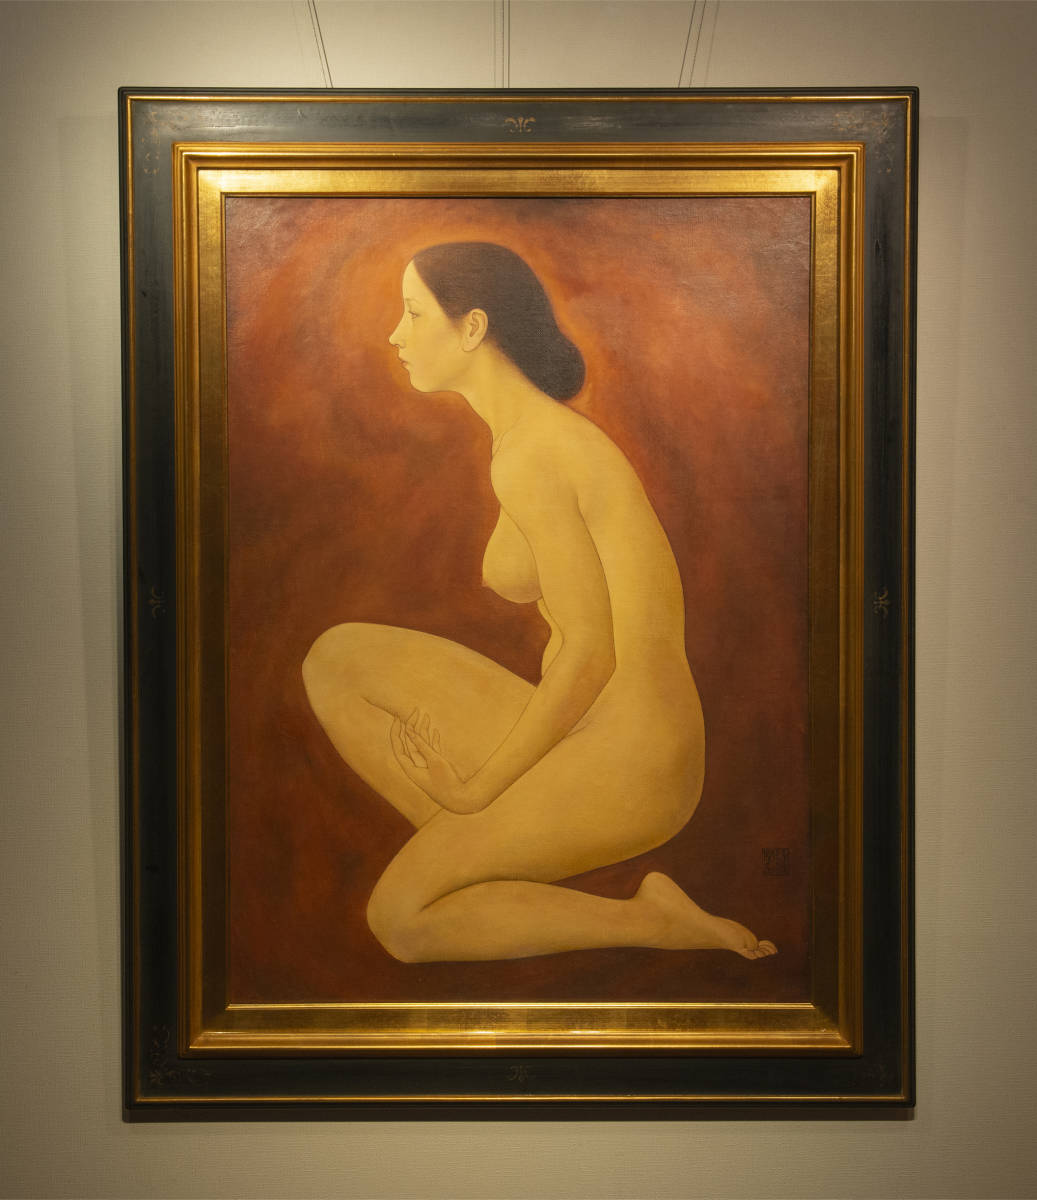 薛彦群, 1987, 跪着的女性身体, 参加中国嘉德展览会, 油画, 框架, 认证正品, 中国人, 绘画, 当代艺术, 绘画, 油画, 肖像